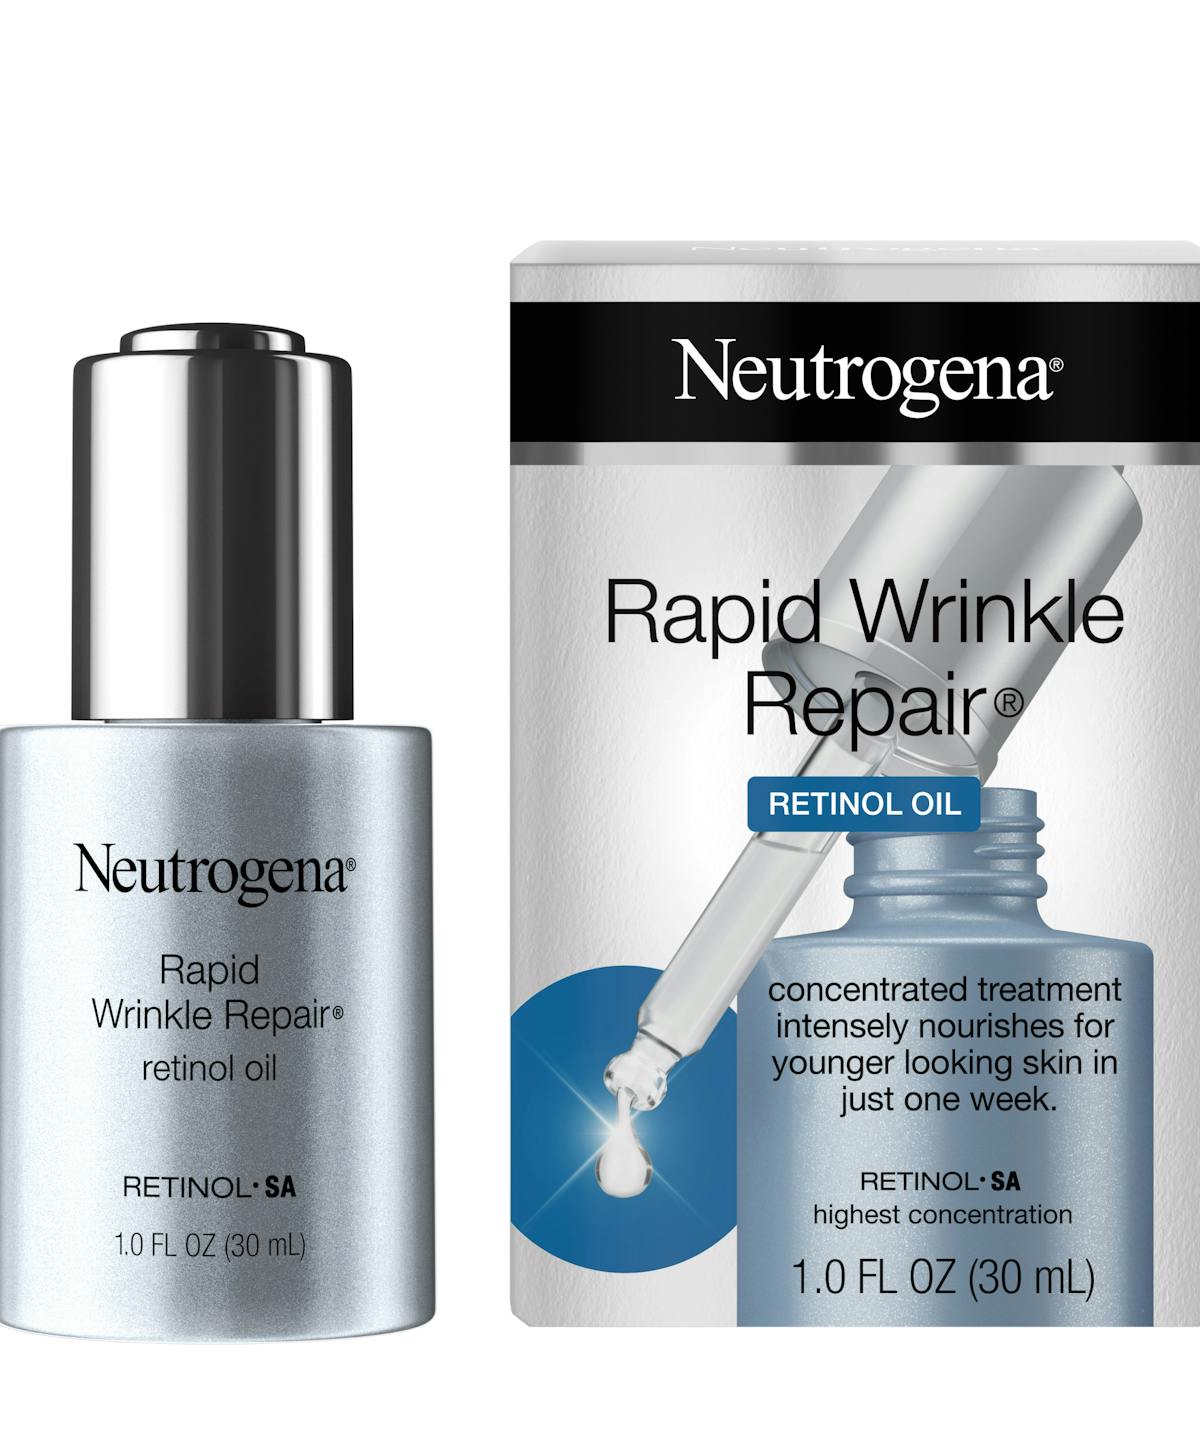 neutrogena deep wrinkle serum retinol percentage)